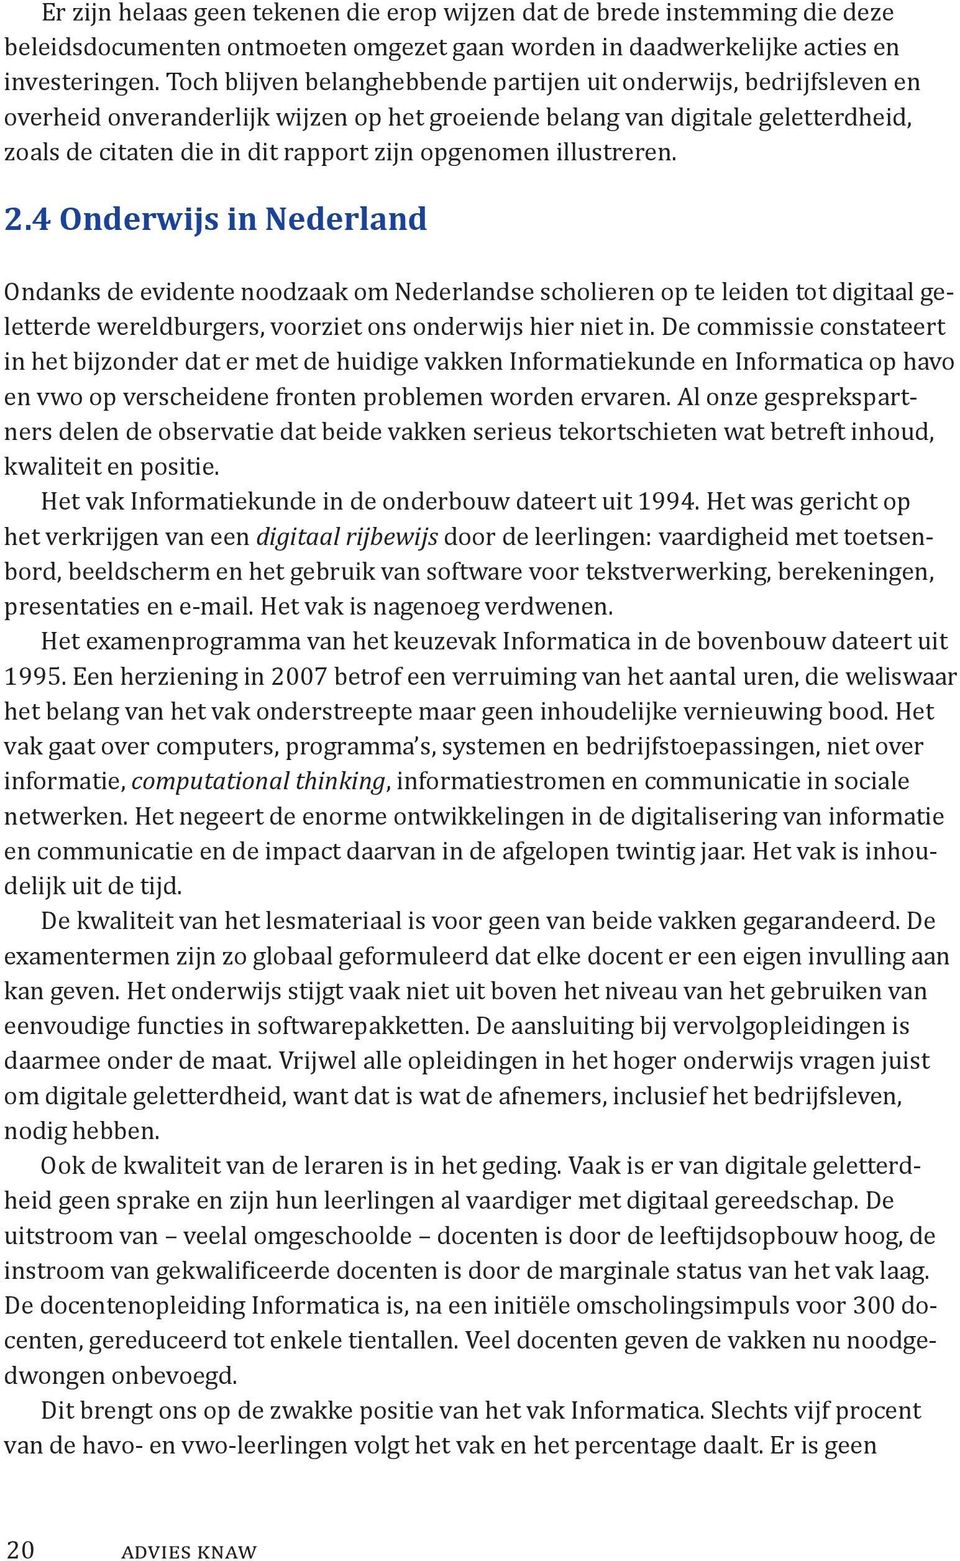 opgenomen illustreren. 2.4 Onderwijs in Nederland Ondanks de evidente noodzaak om Nederlandse scholieren op te leiden tot digitaal geletterde wereldburgers, voorziet ons onderwijs hier niet in.